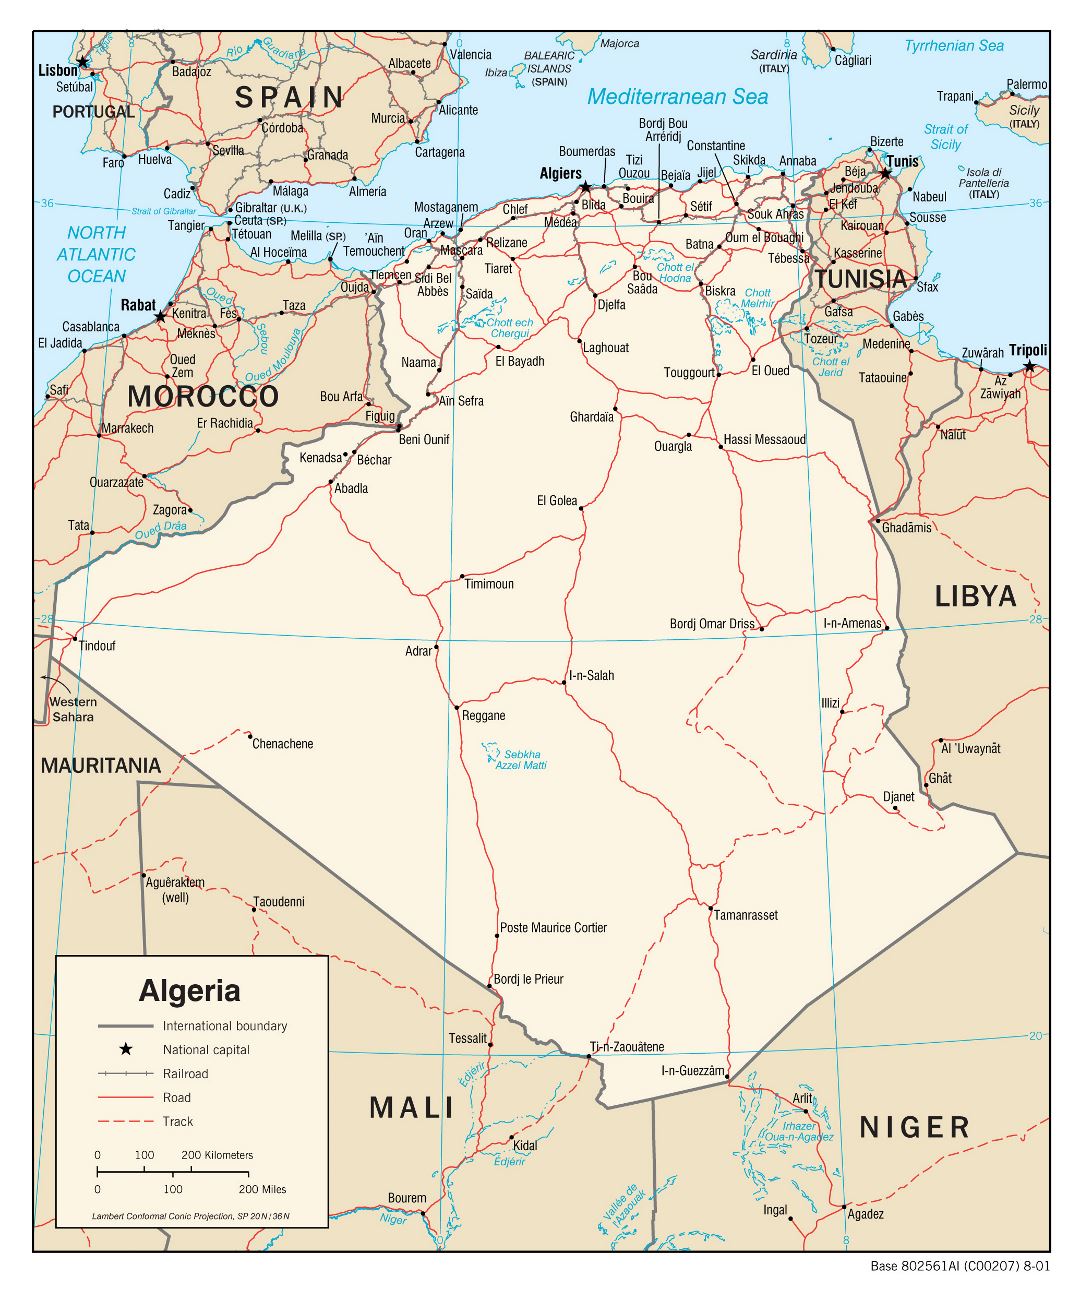 Grande detallado mapa político de Argelia con carreteras, ferrocarriles y principales ciudades - 2001